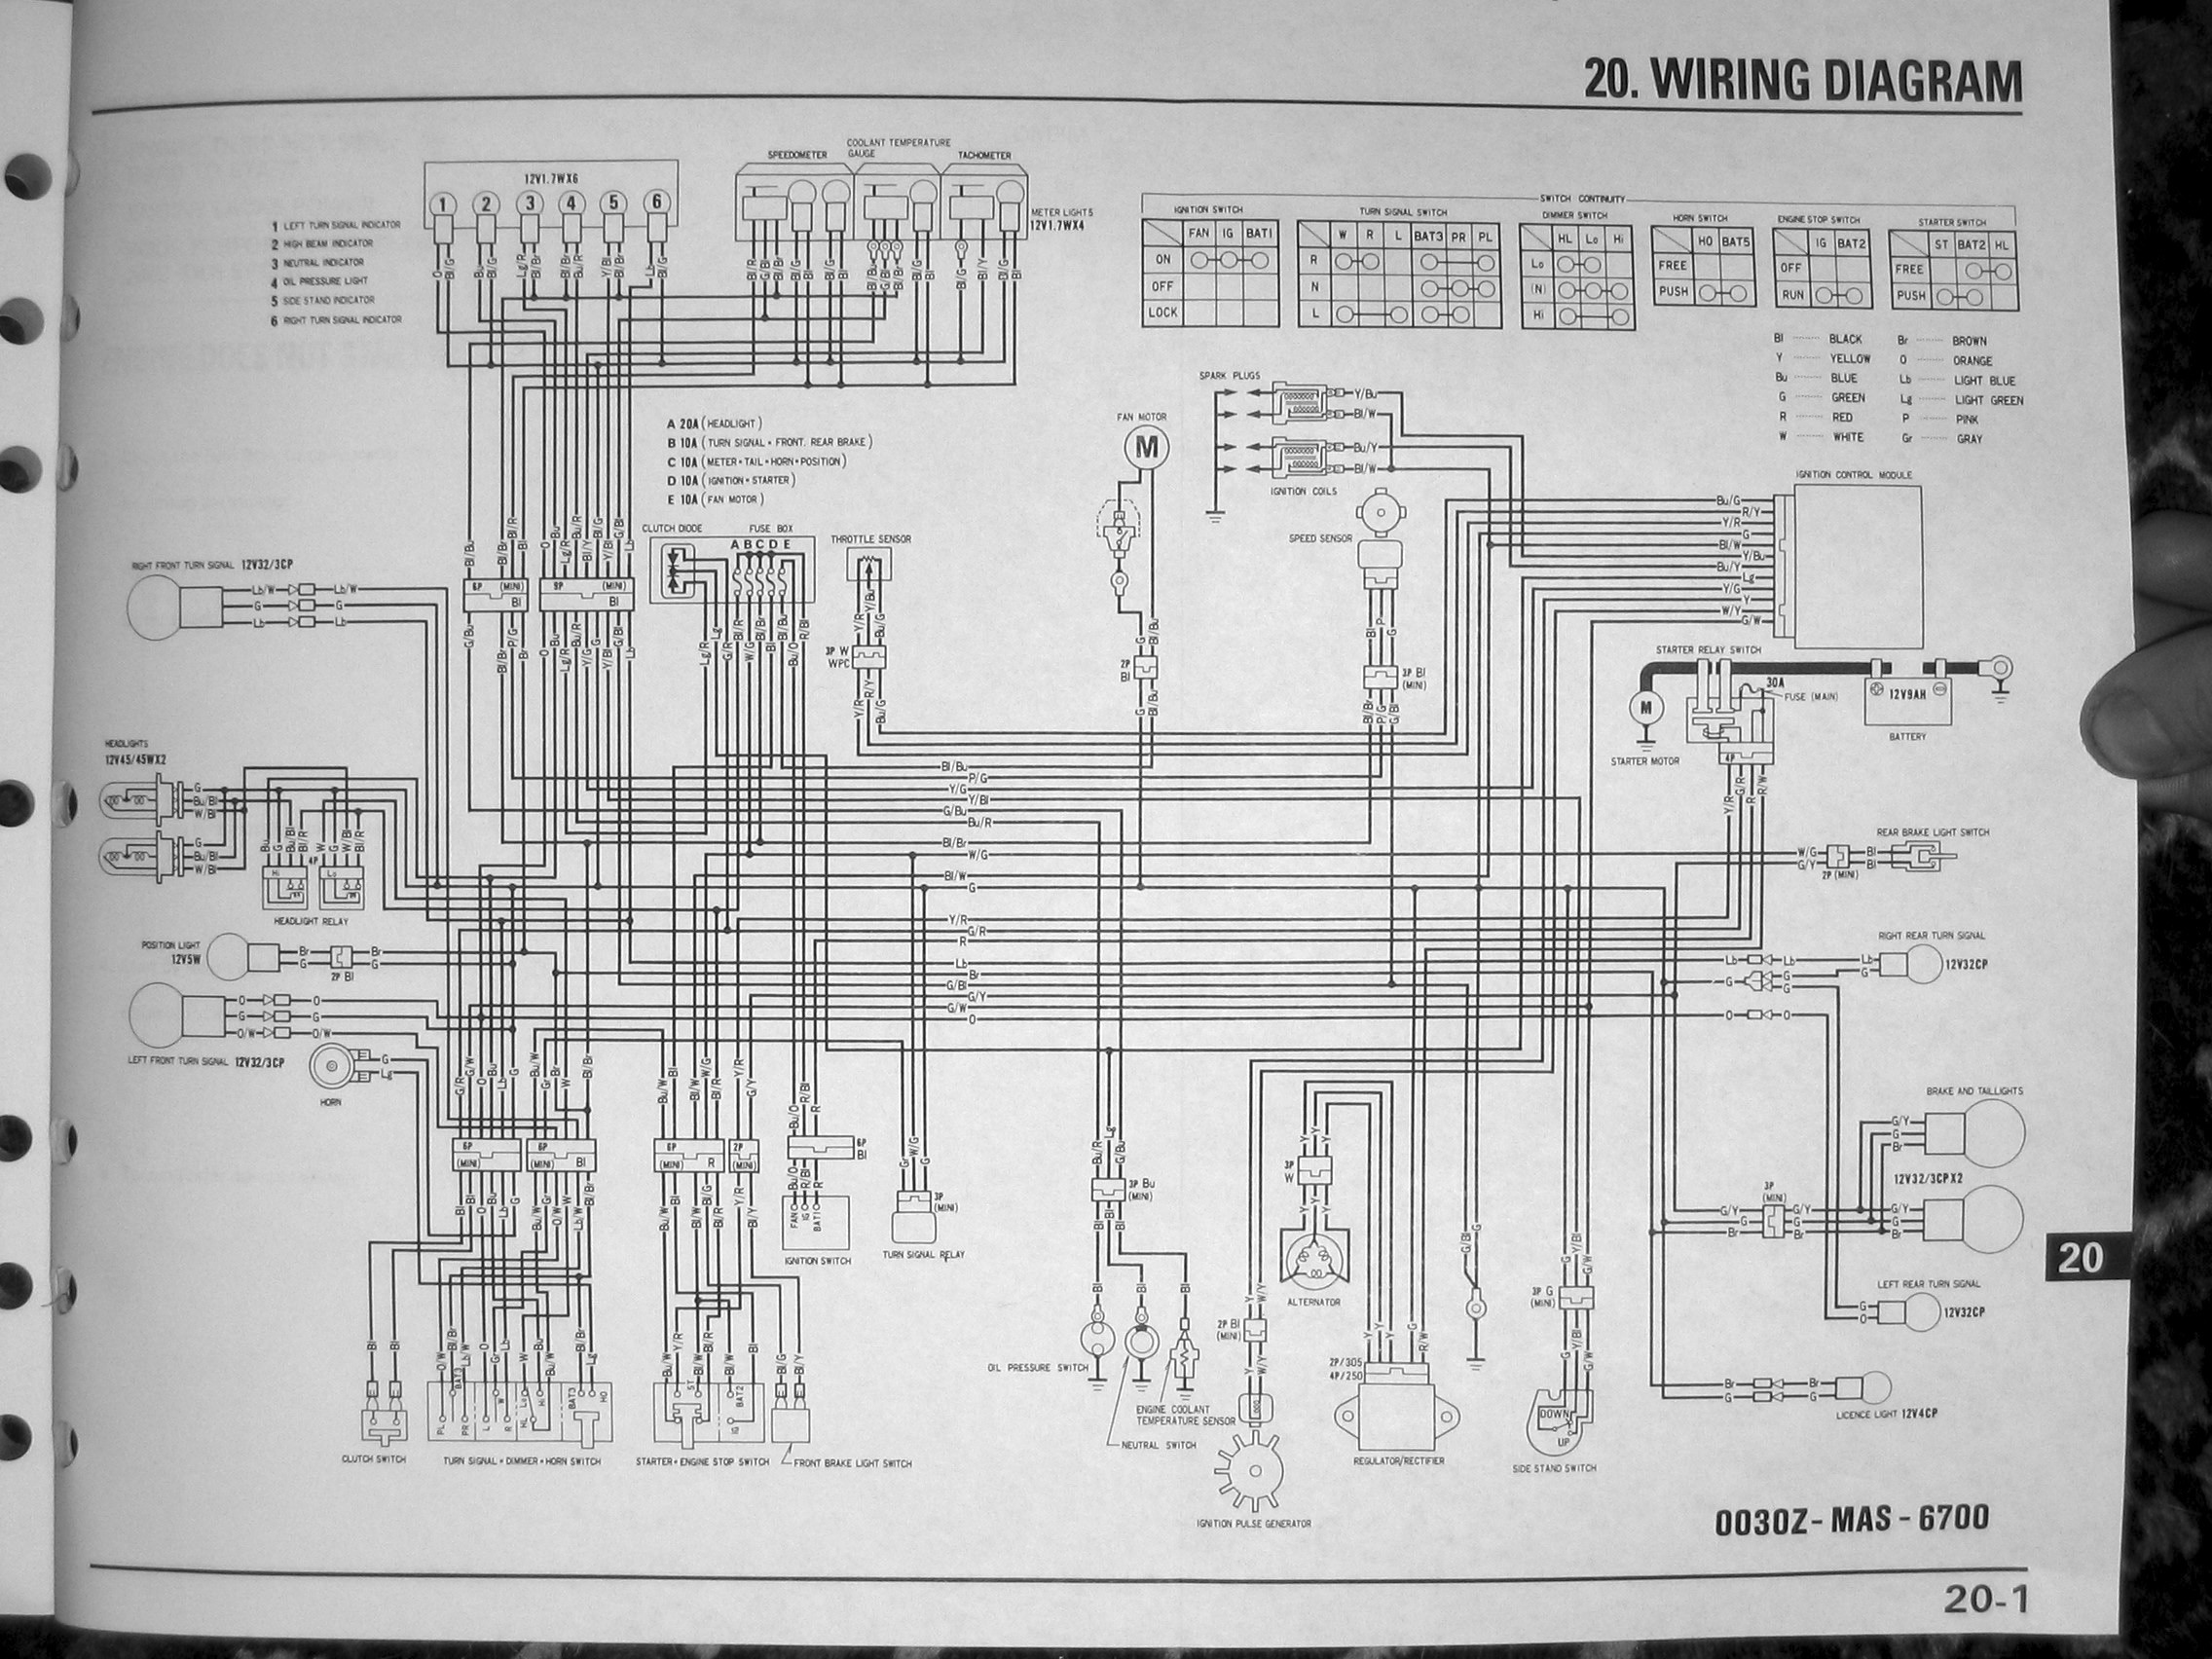 1978 Honda Cb400A Wiring Diagram from detoxicrecenze.com